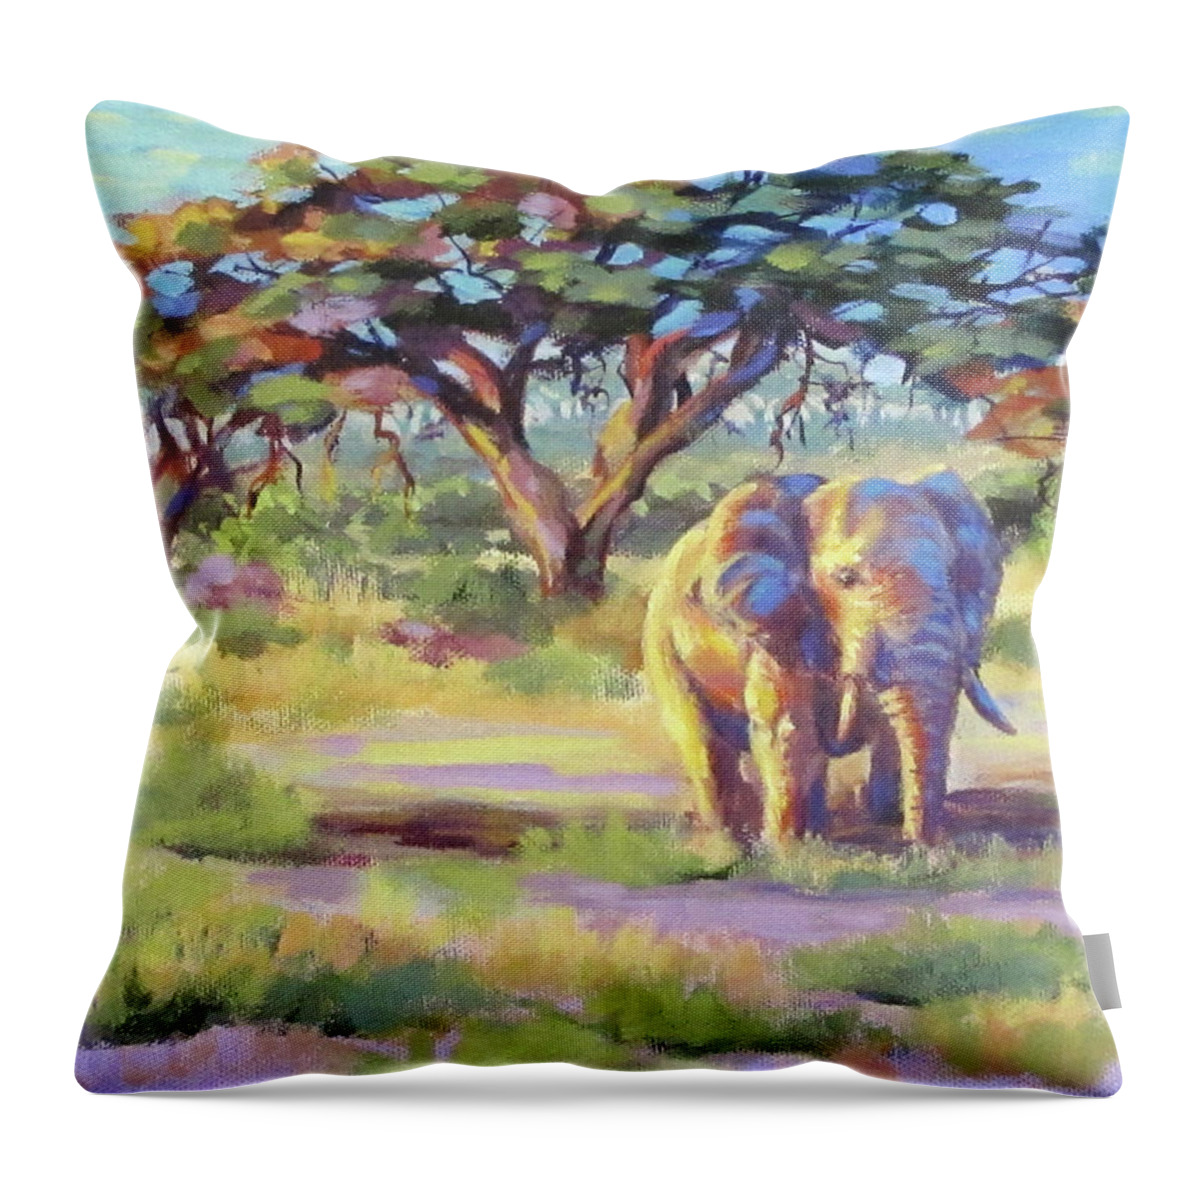 Africa Throw Pillow featuring the painting Golden by Karen Ilari